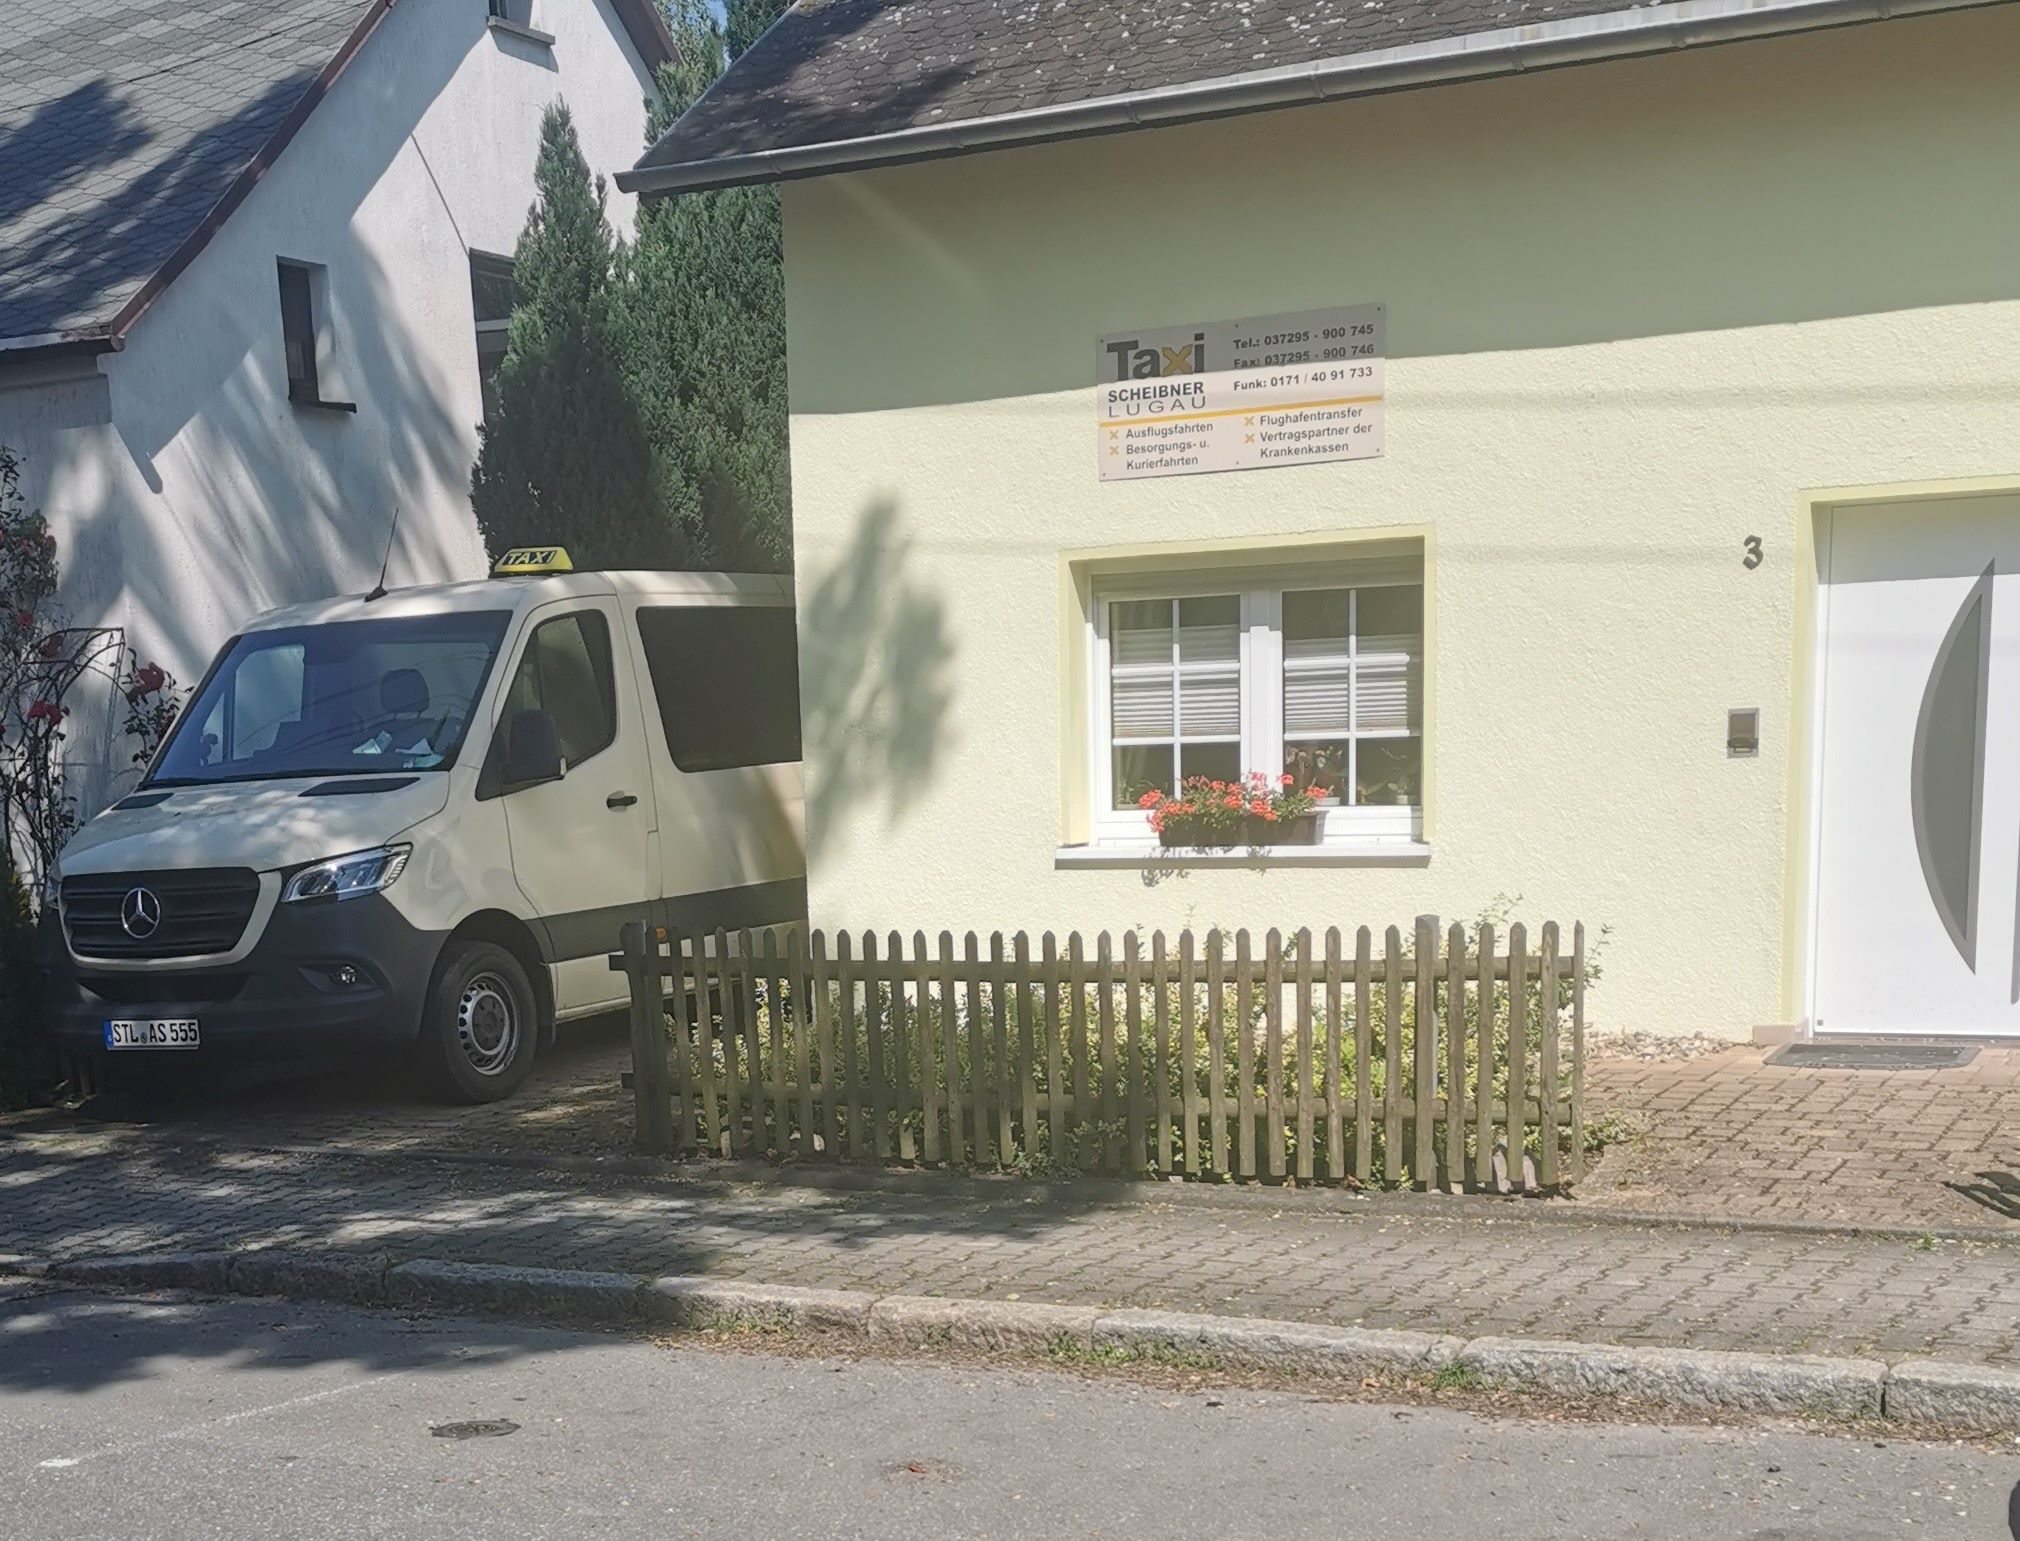 Bild 1 Taxi Scheibner in Lugau/Erzgeb.